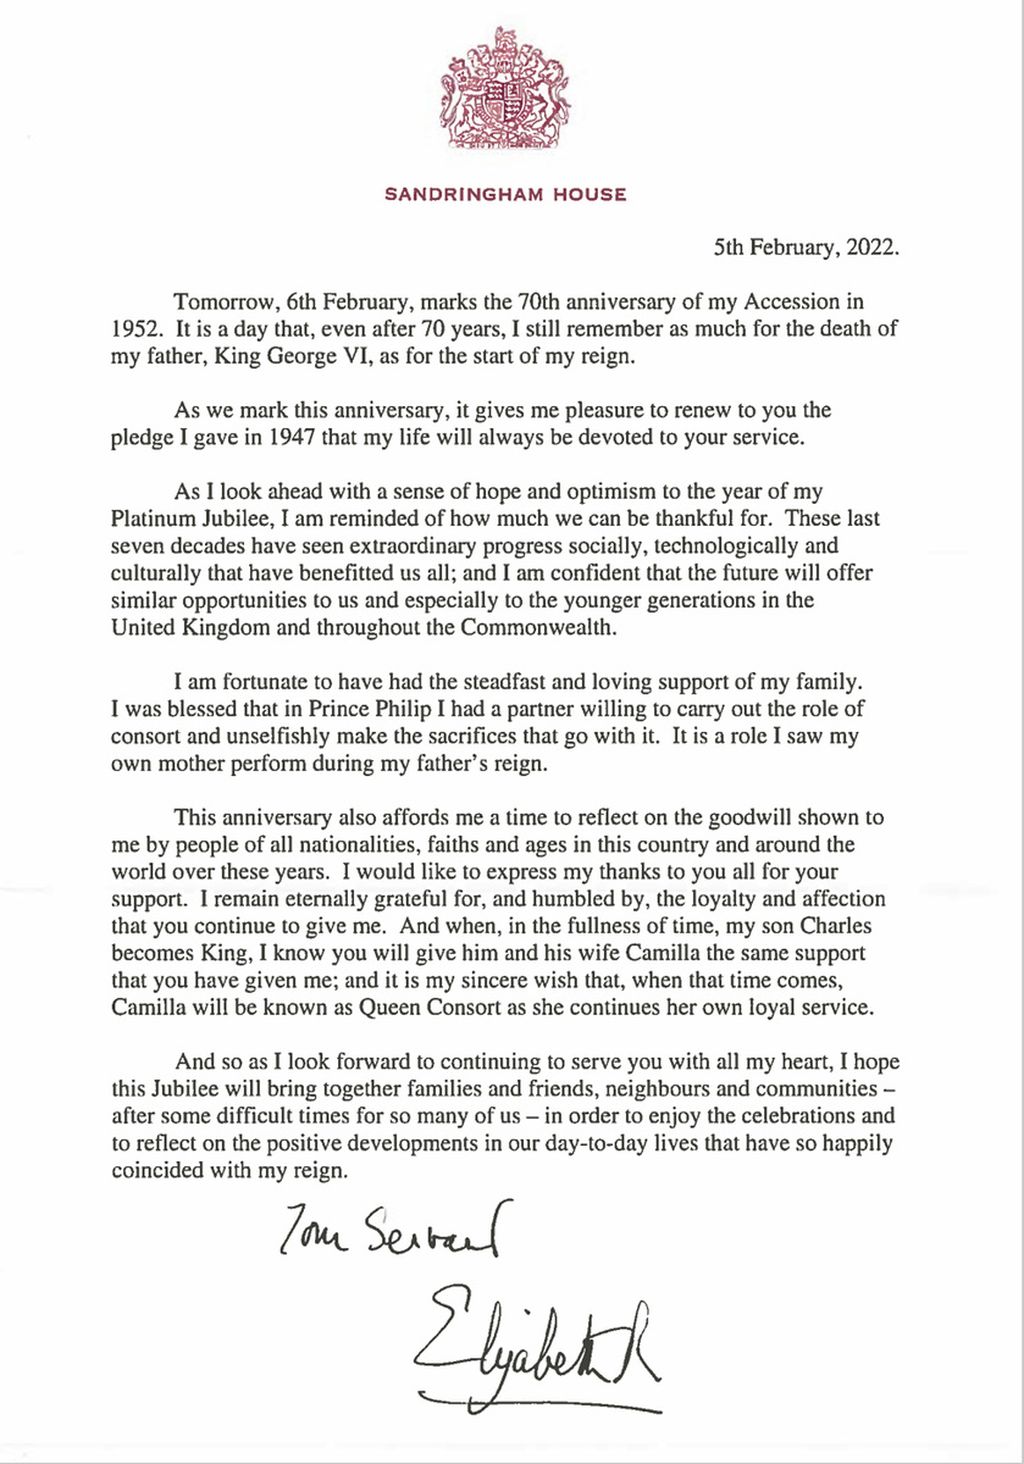 Foto yang dirilis Istana Buckingham, Sabtu (5/2/2022), ini memperlihatkan pesan Ratu Elizabeth II kepada bangsa Inggris Raya. Dalam pesan itu, ia antara lain merestui Camilla untuk menjadi permaisuri kerajaan saat kelak Pangeran Charles, putranya, menjadi raja.